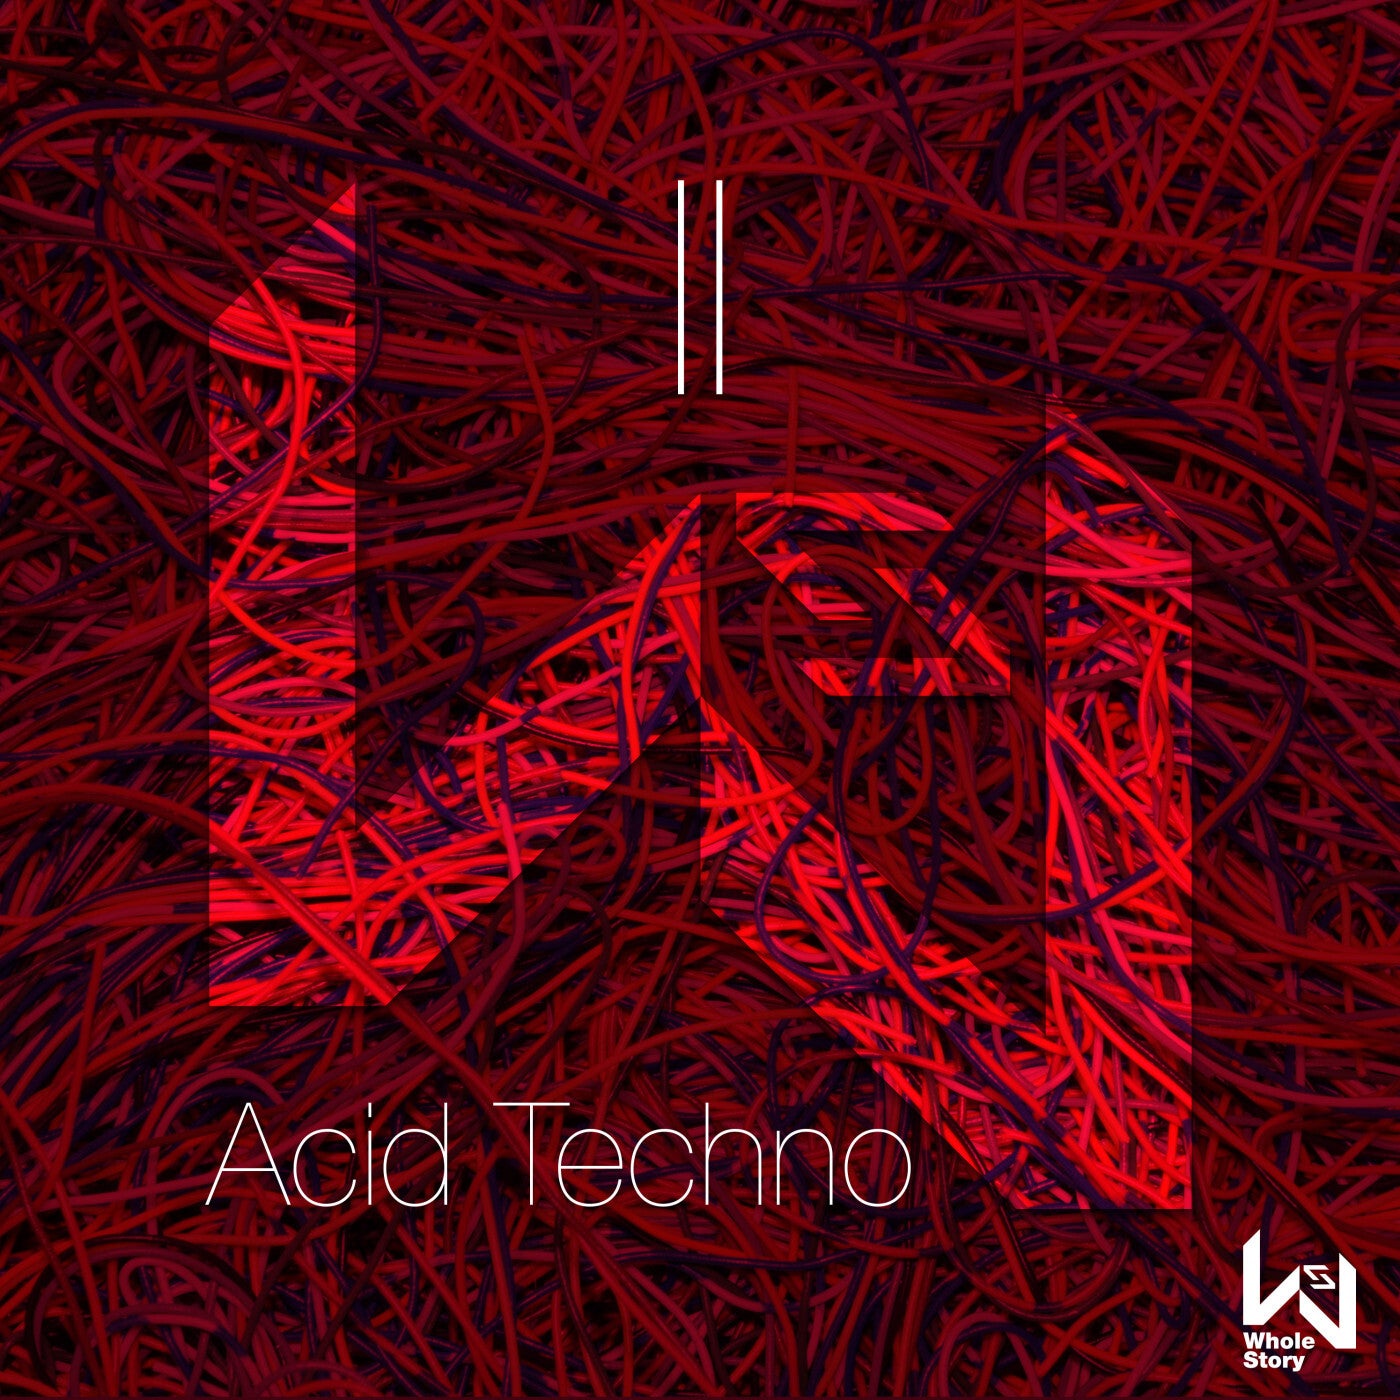 Acid Techno II